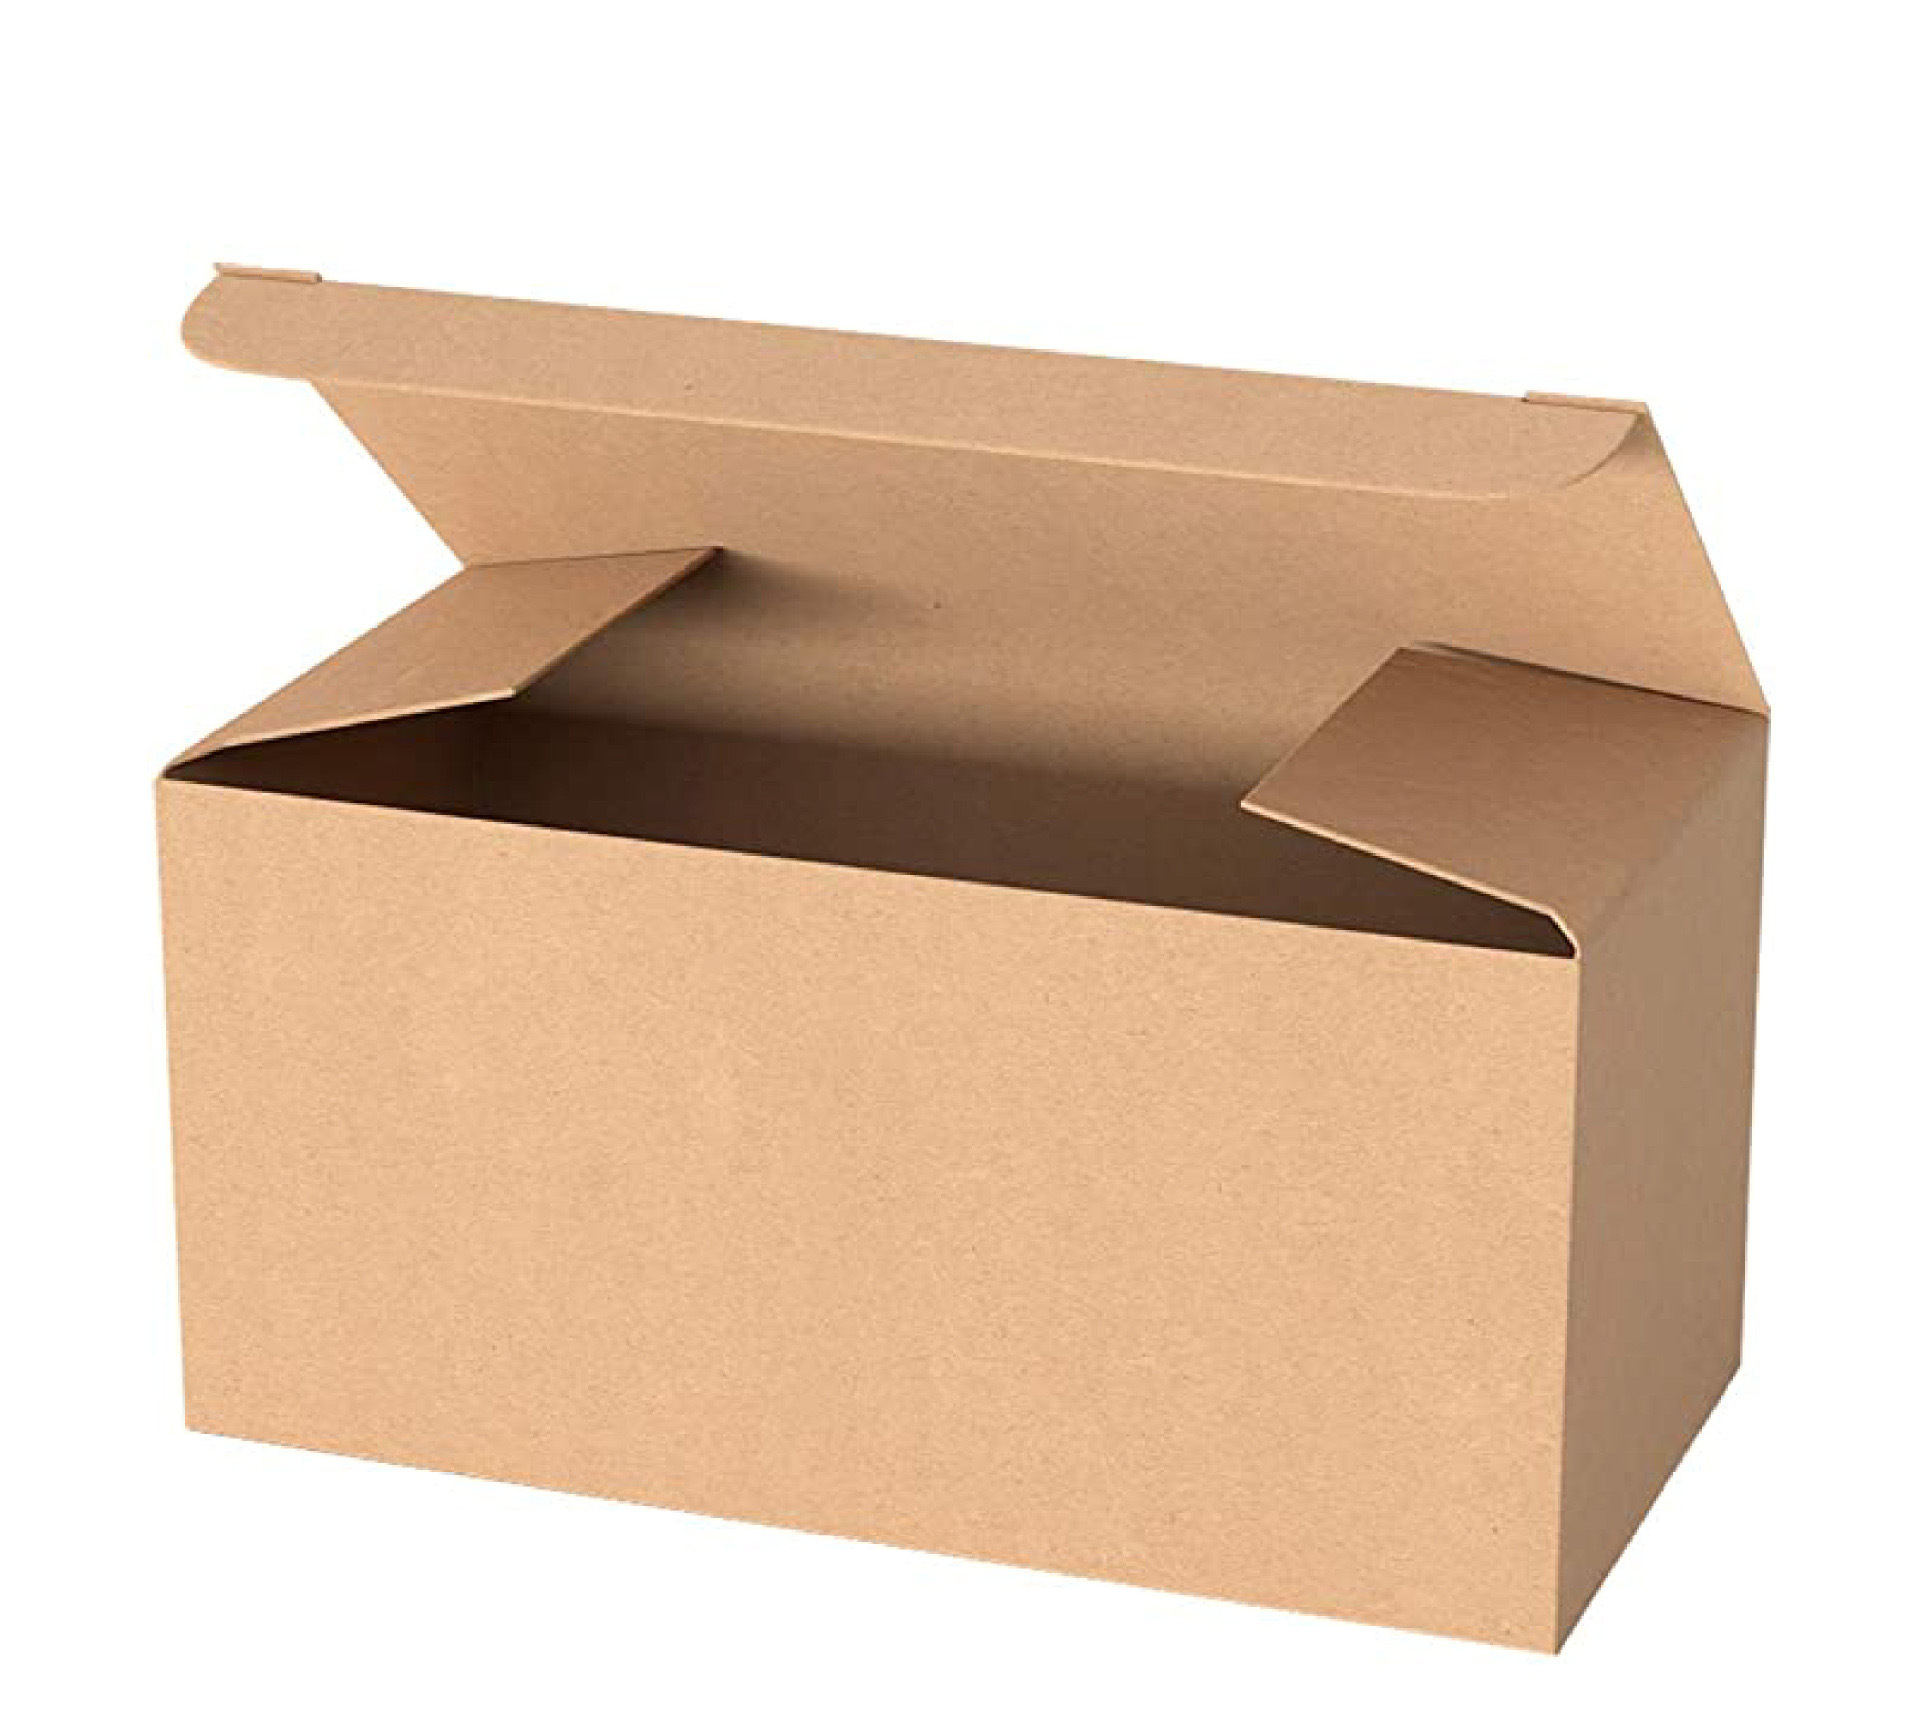 纸盒包装印刷多少钱_抽纸盒印刷_印刷纸盒